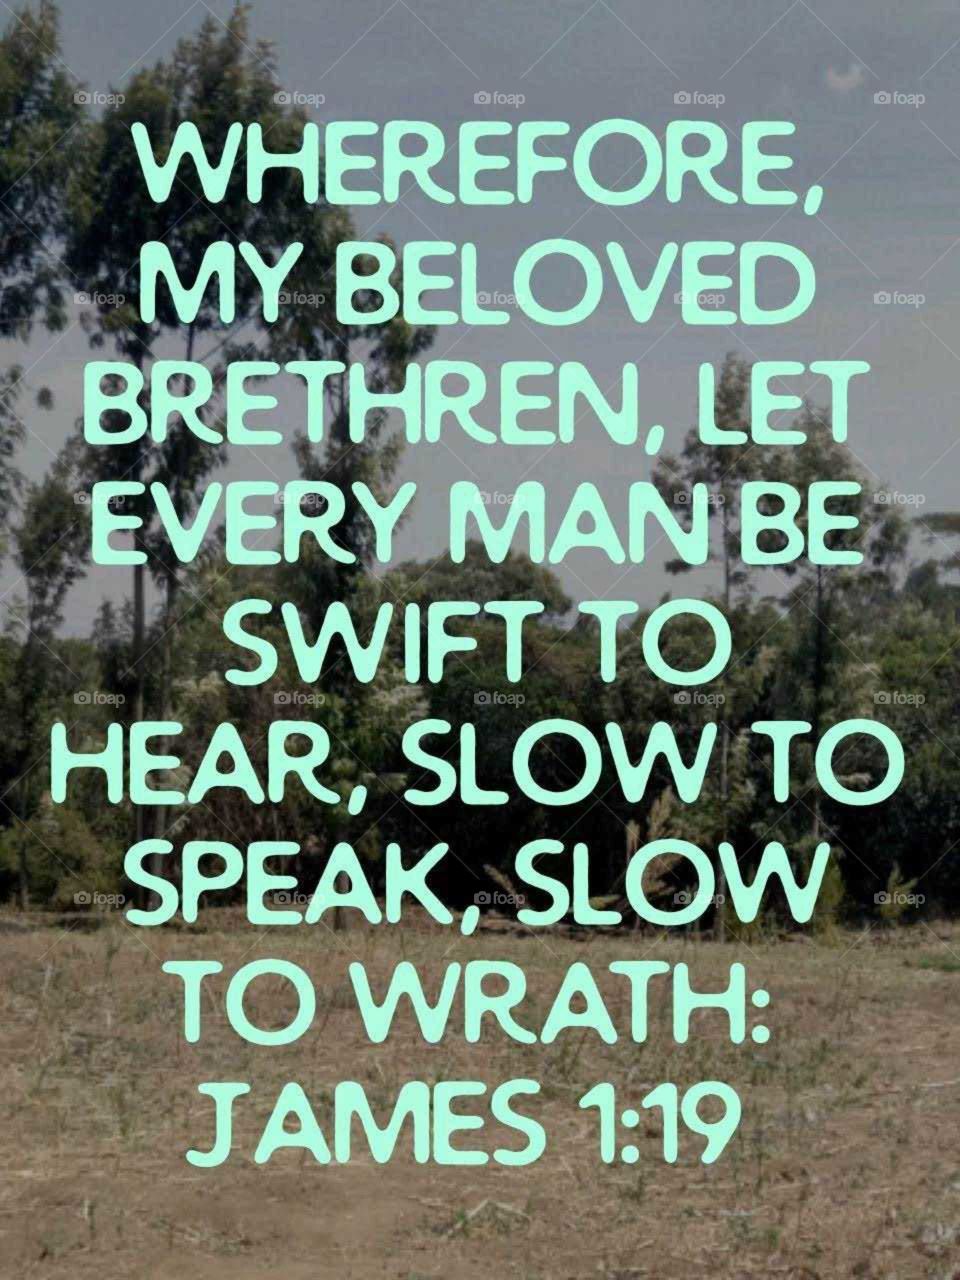 Be slow to speak